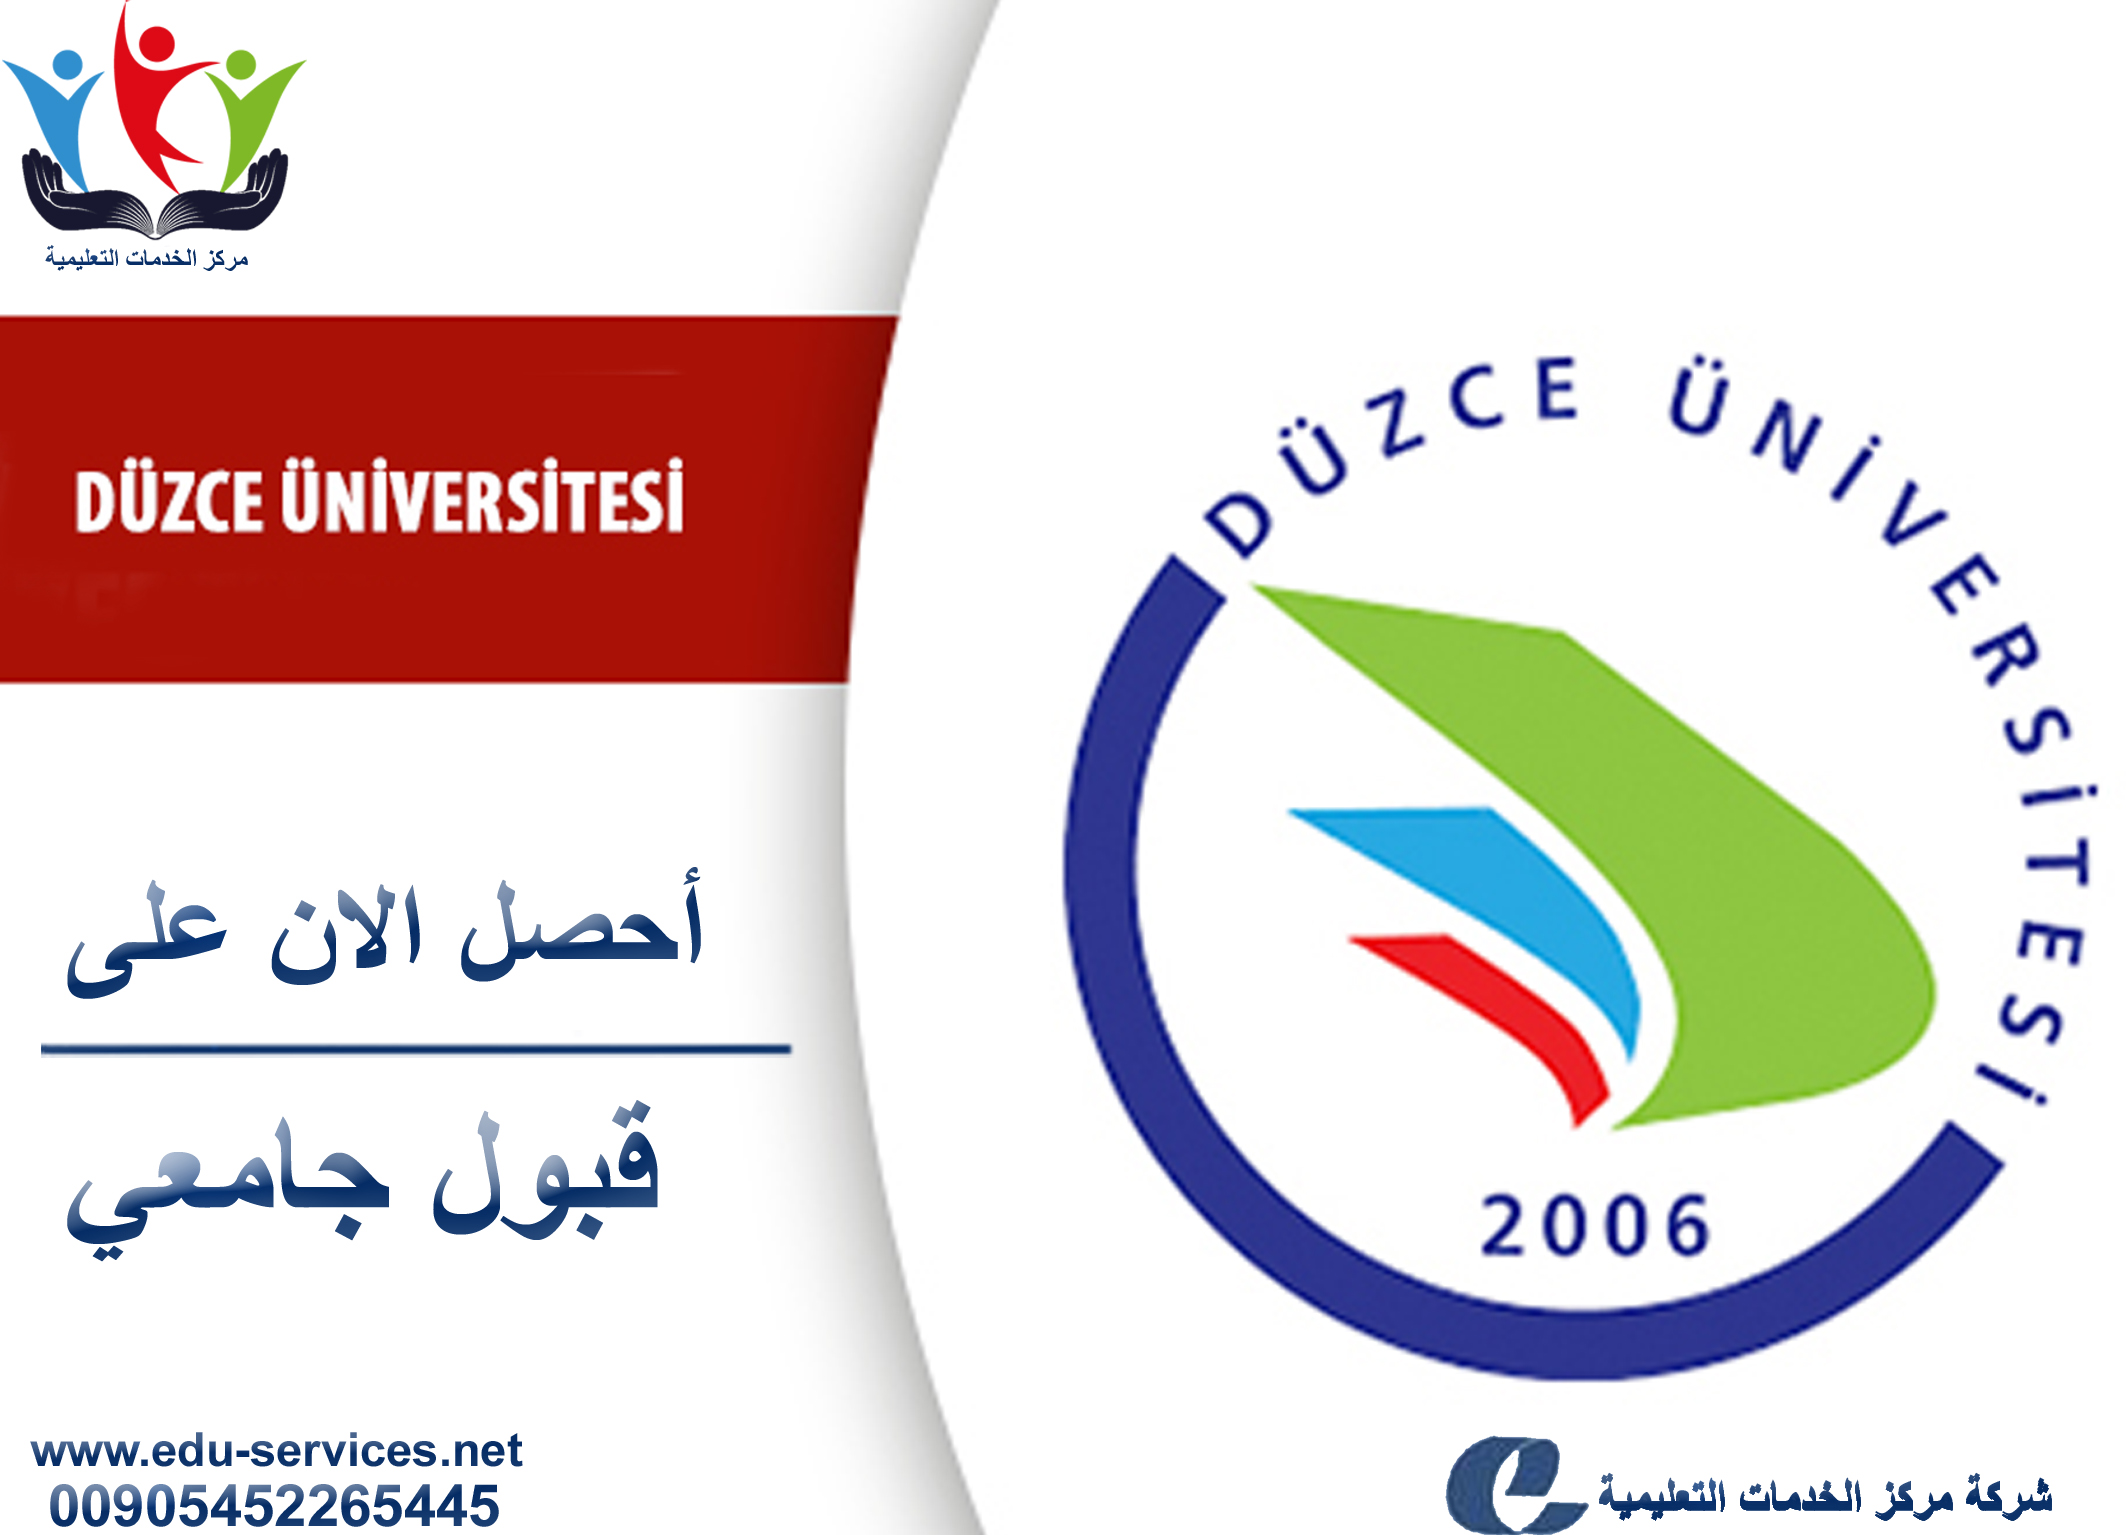 افتتاح التسجيل في جامعة دوزجة للعام 2018-2019